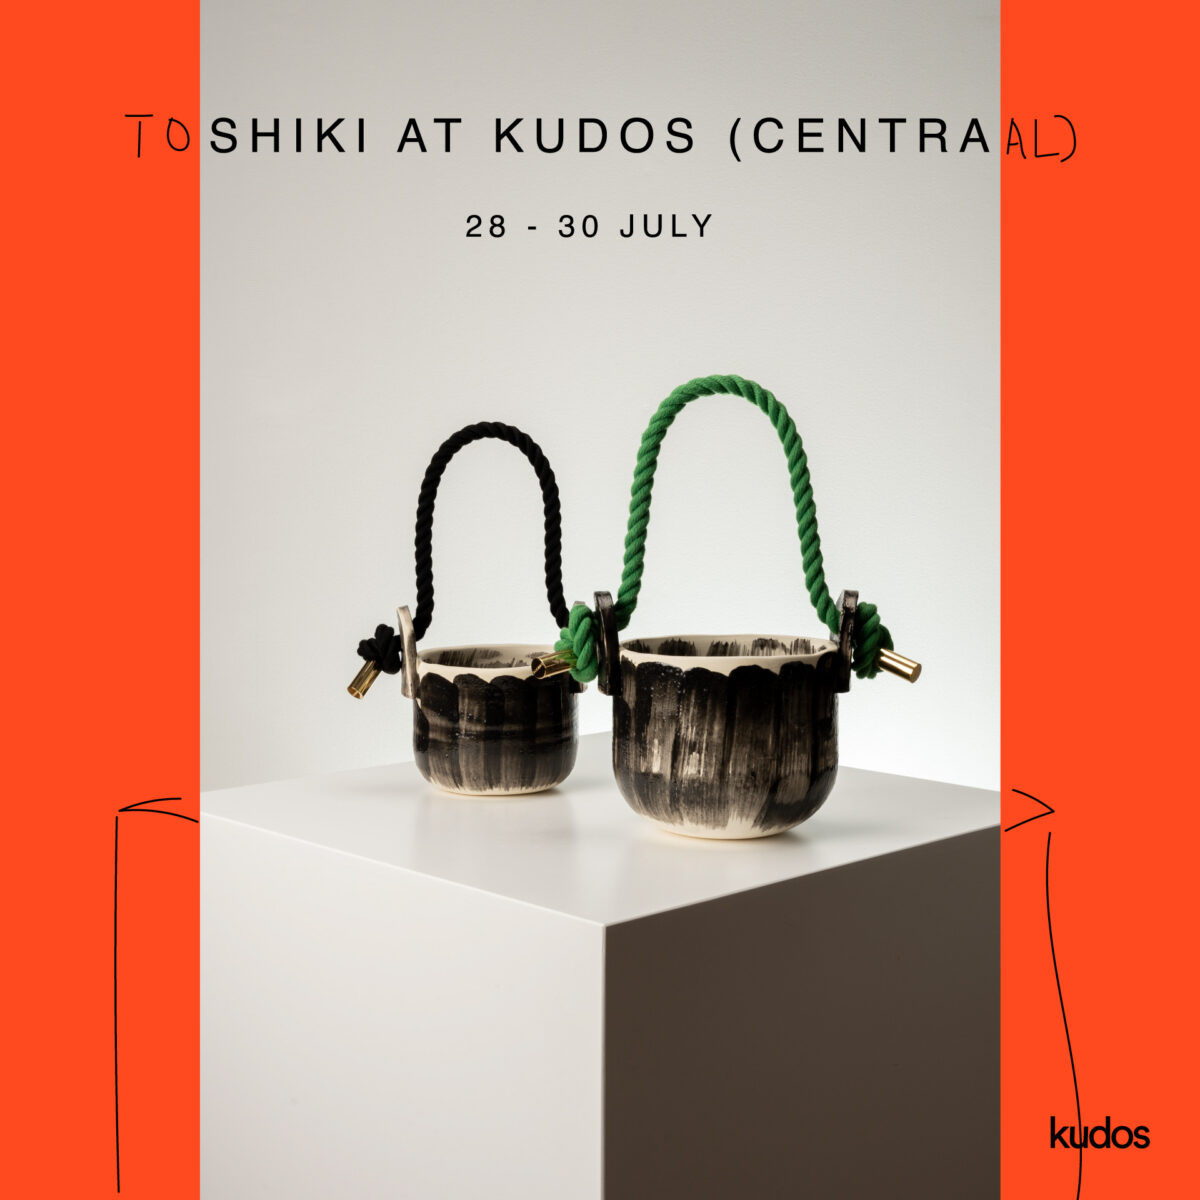 デザイナー 八木沢俊樹による初の陶芸作品の展覧会「Toshiki at kudos (Centraal)」が...